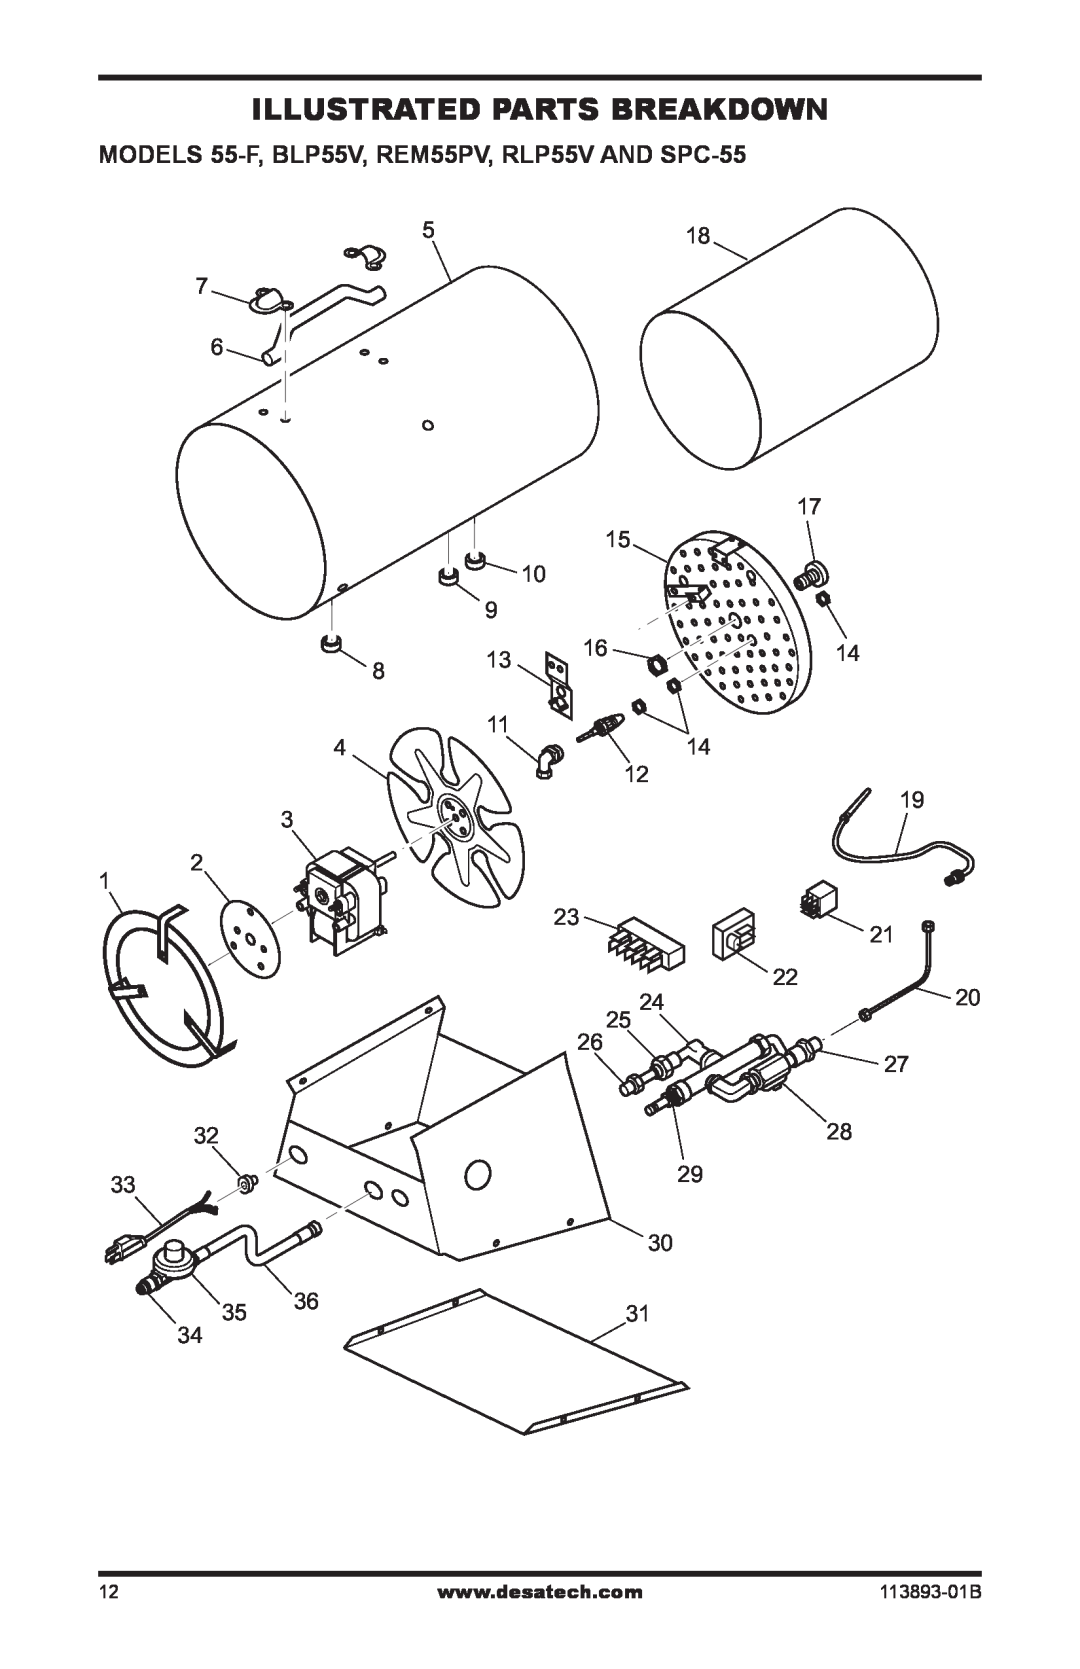 Desa Air Conditioner owner manual Illustrated Parts Breakdown, MODELS 55-F,BLP55V, REM55PV, RLP55V AND SPC-55 